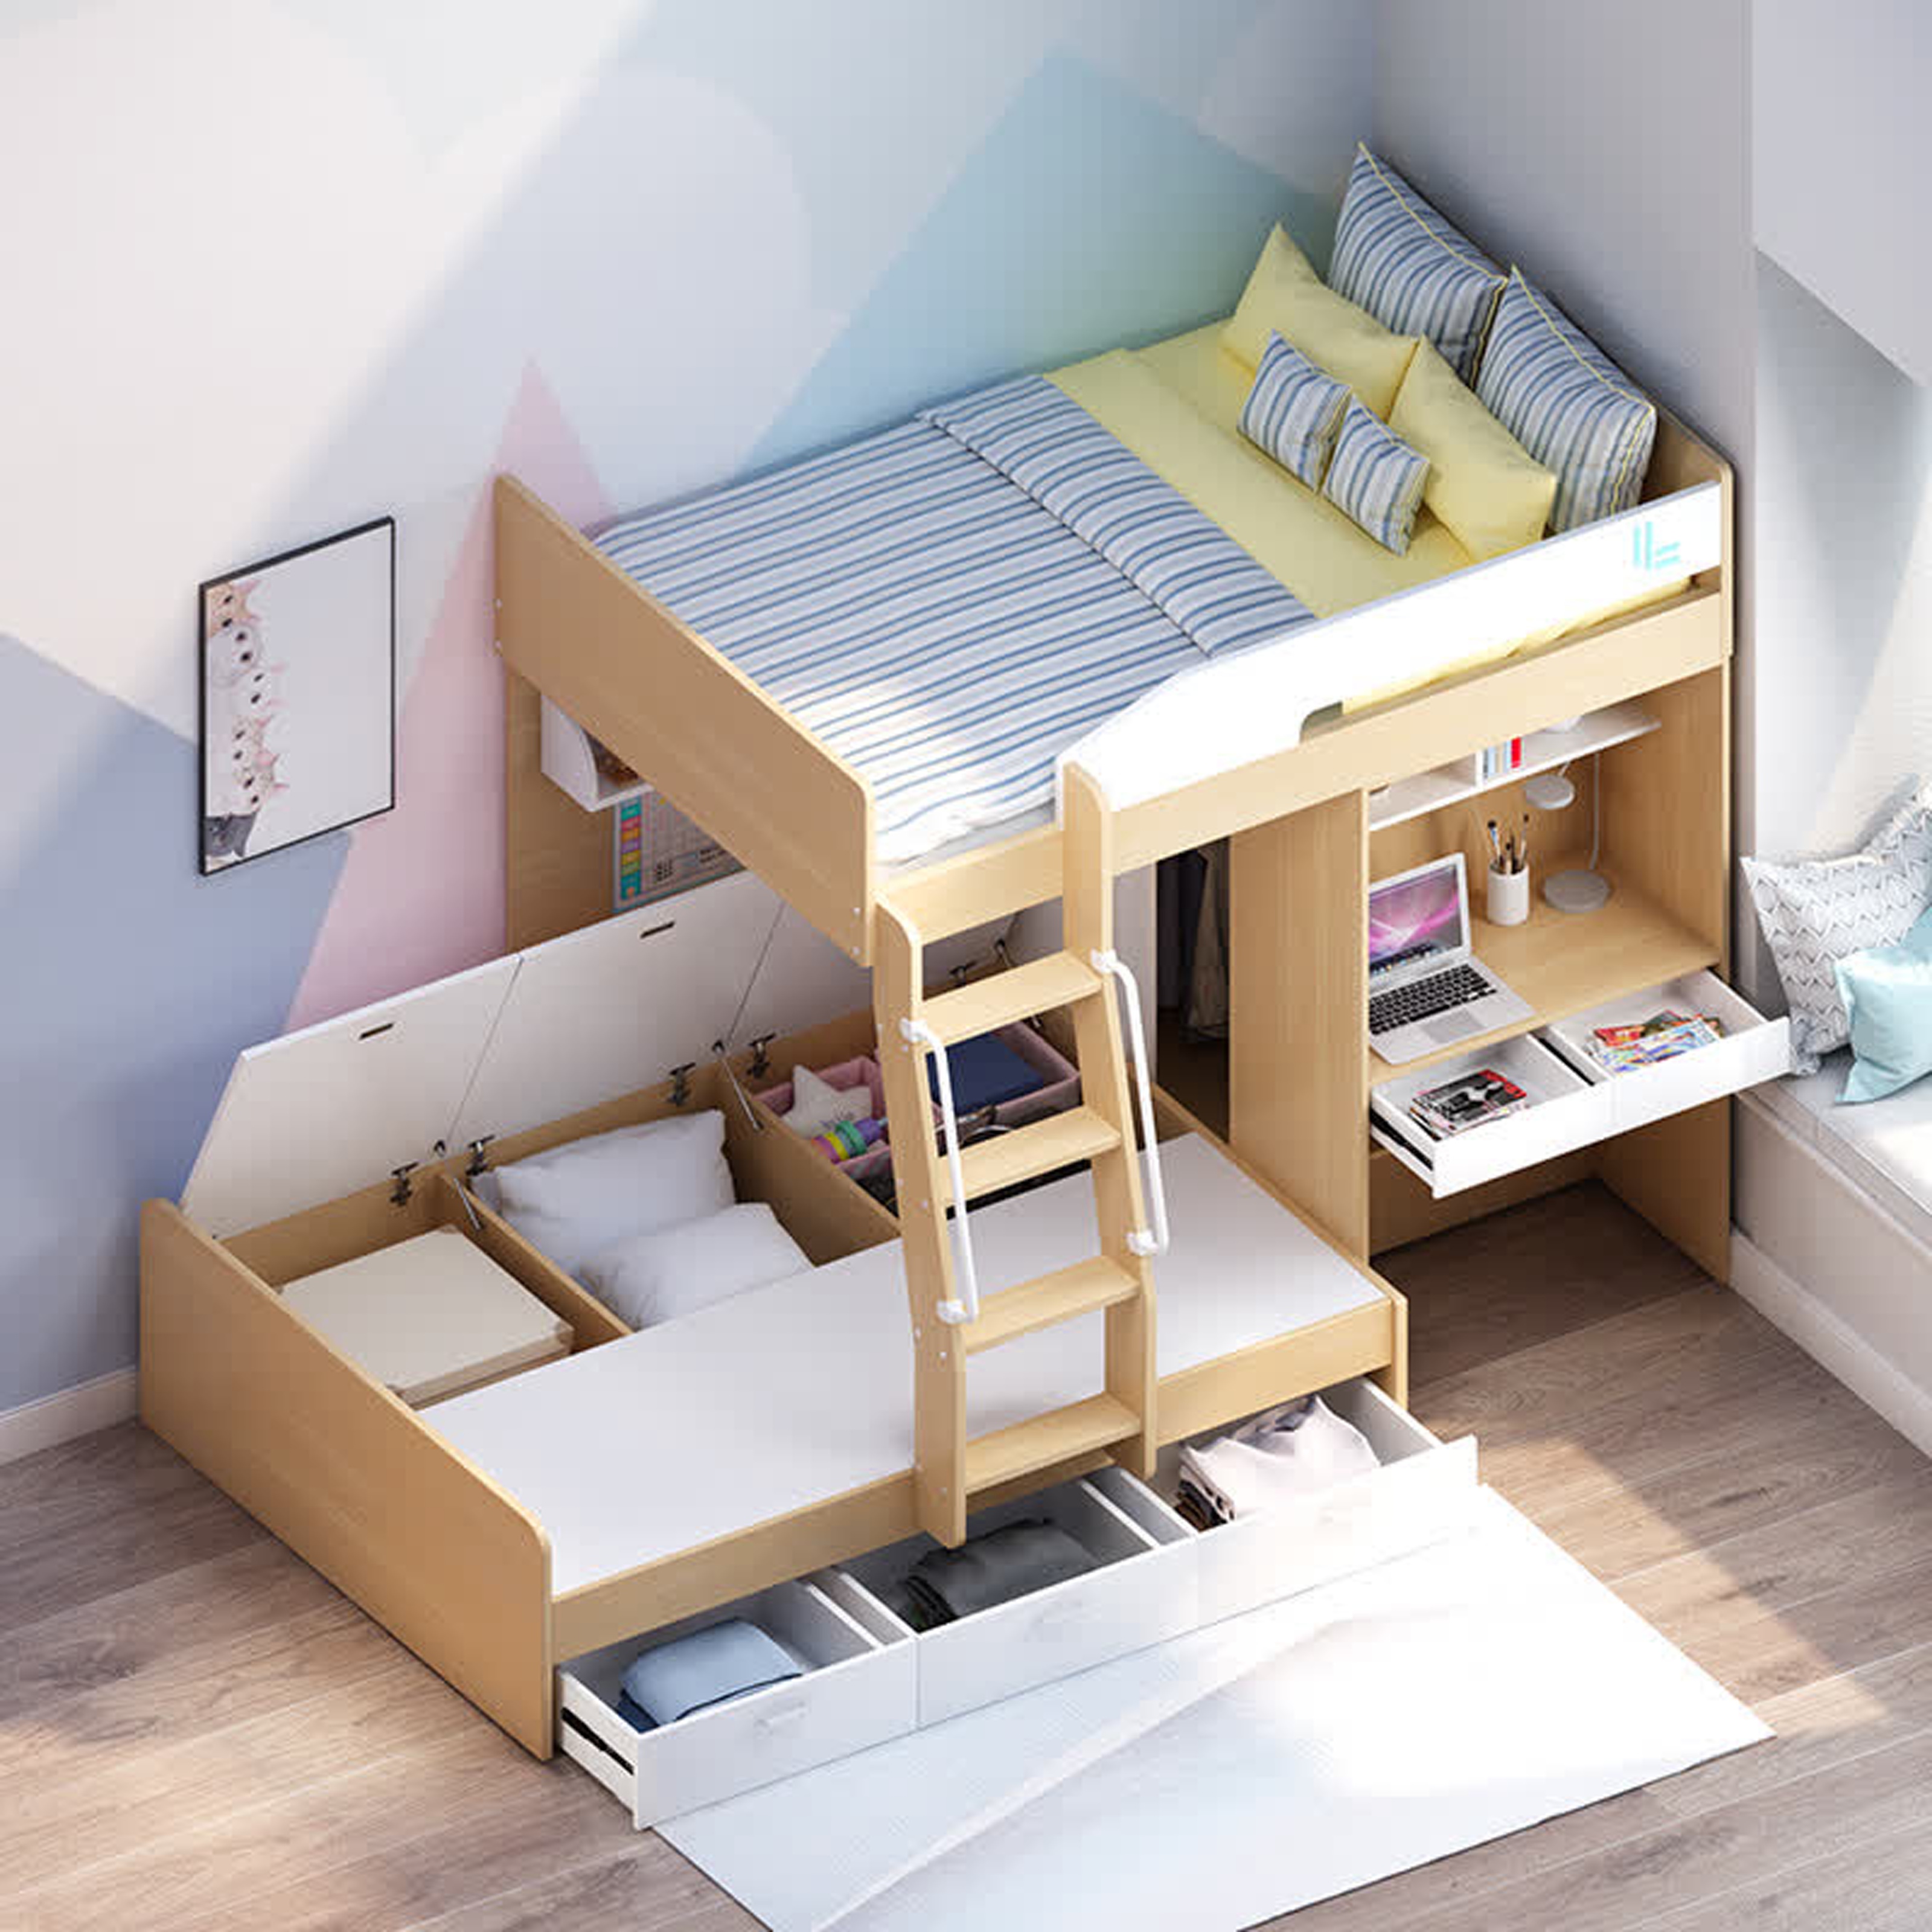 小房间双层床设计图图片